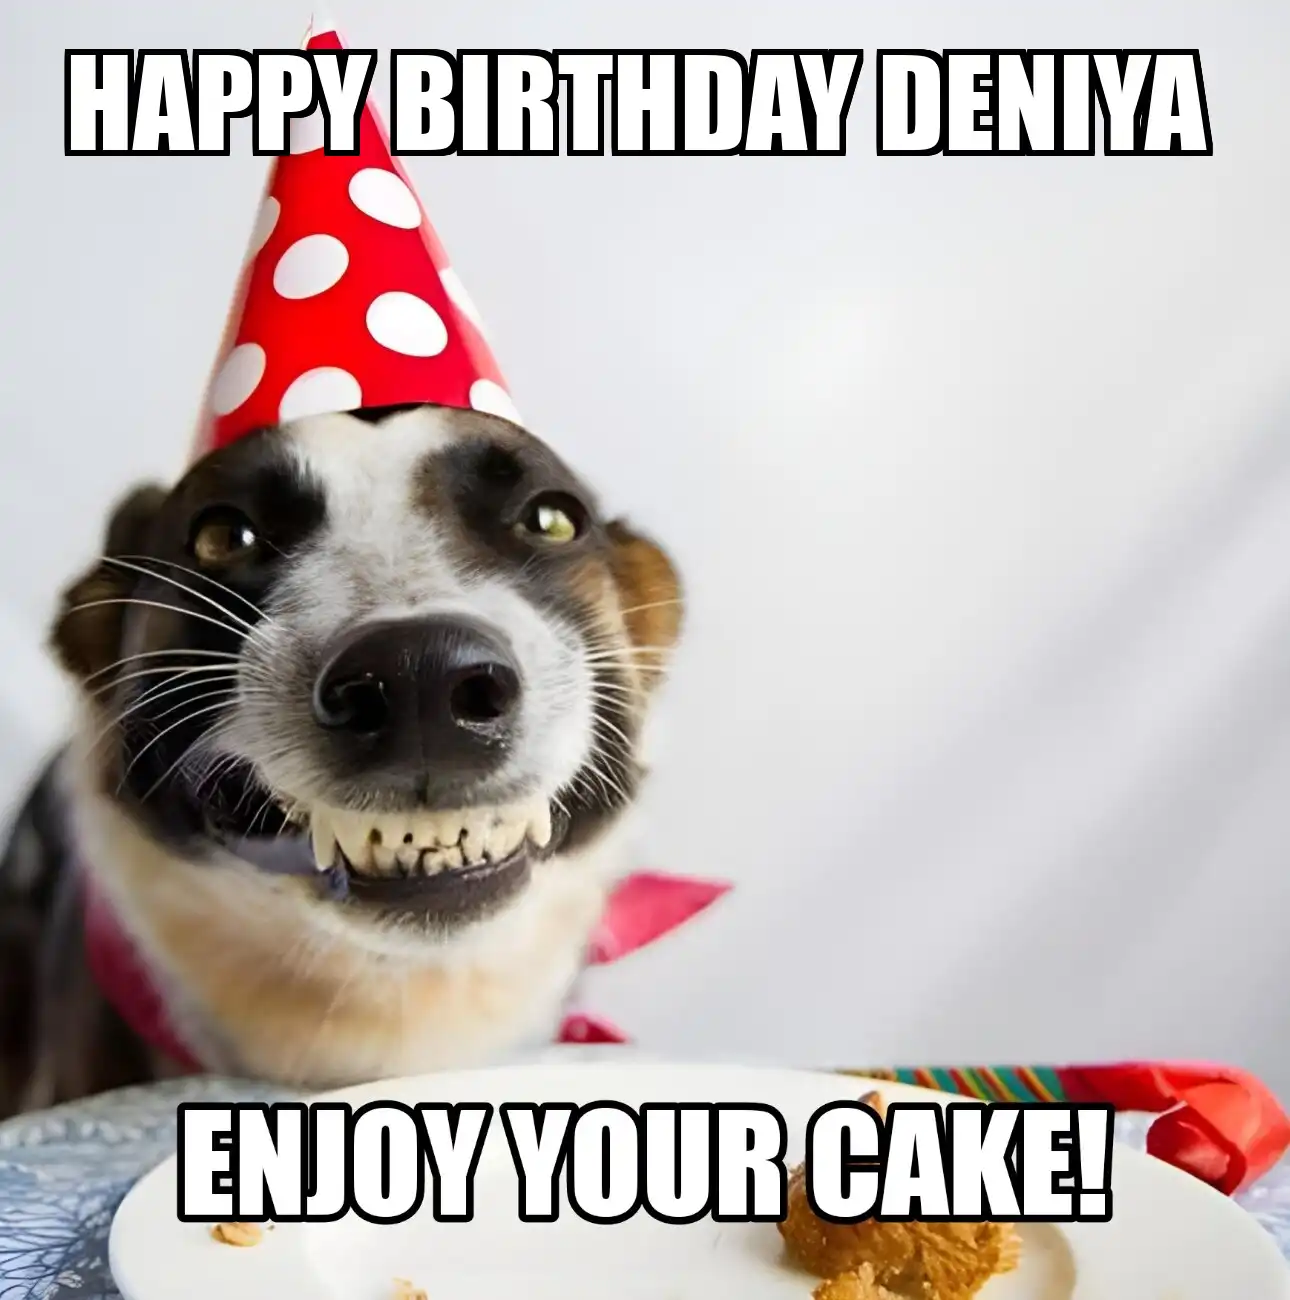 Happy Birthday Deniya Enjoy Your Cake Dog Meme